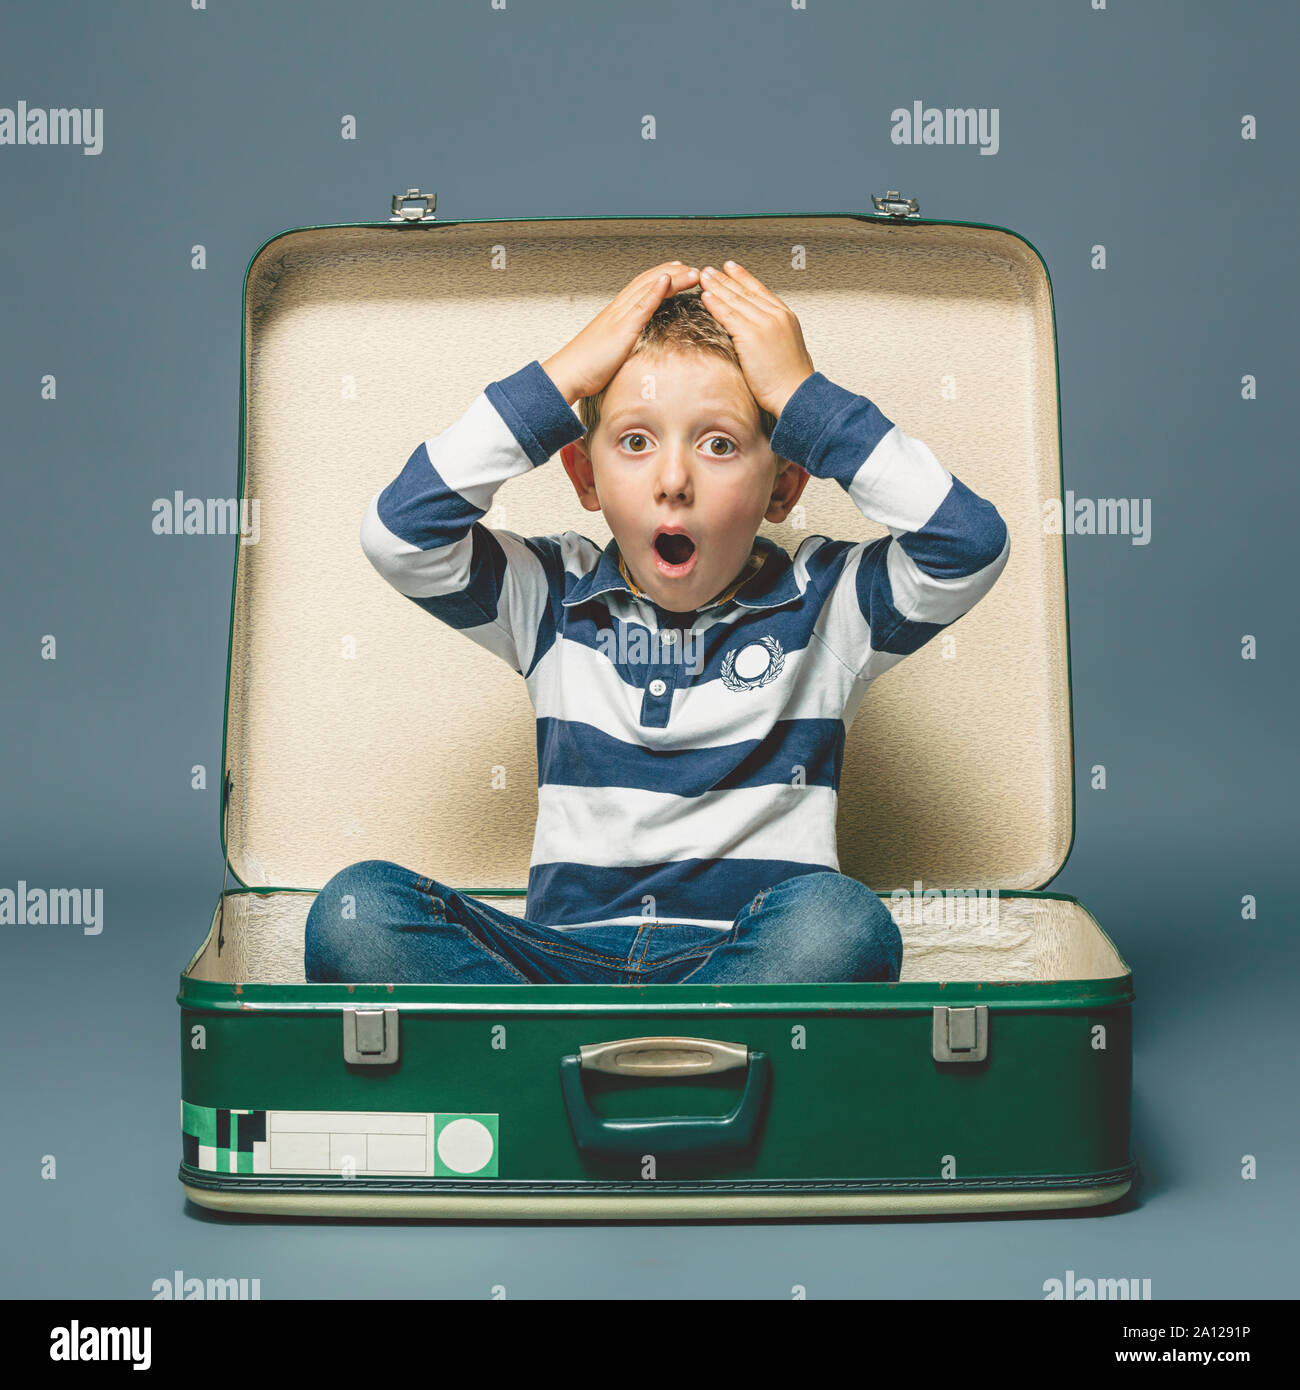 Retrato de estudio de un niño de 6 años con una expresión sorprendió sentado dentro de una maleta vintage. Foto de stock